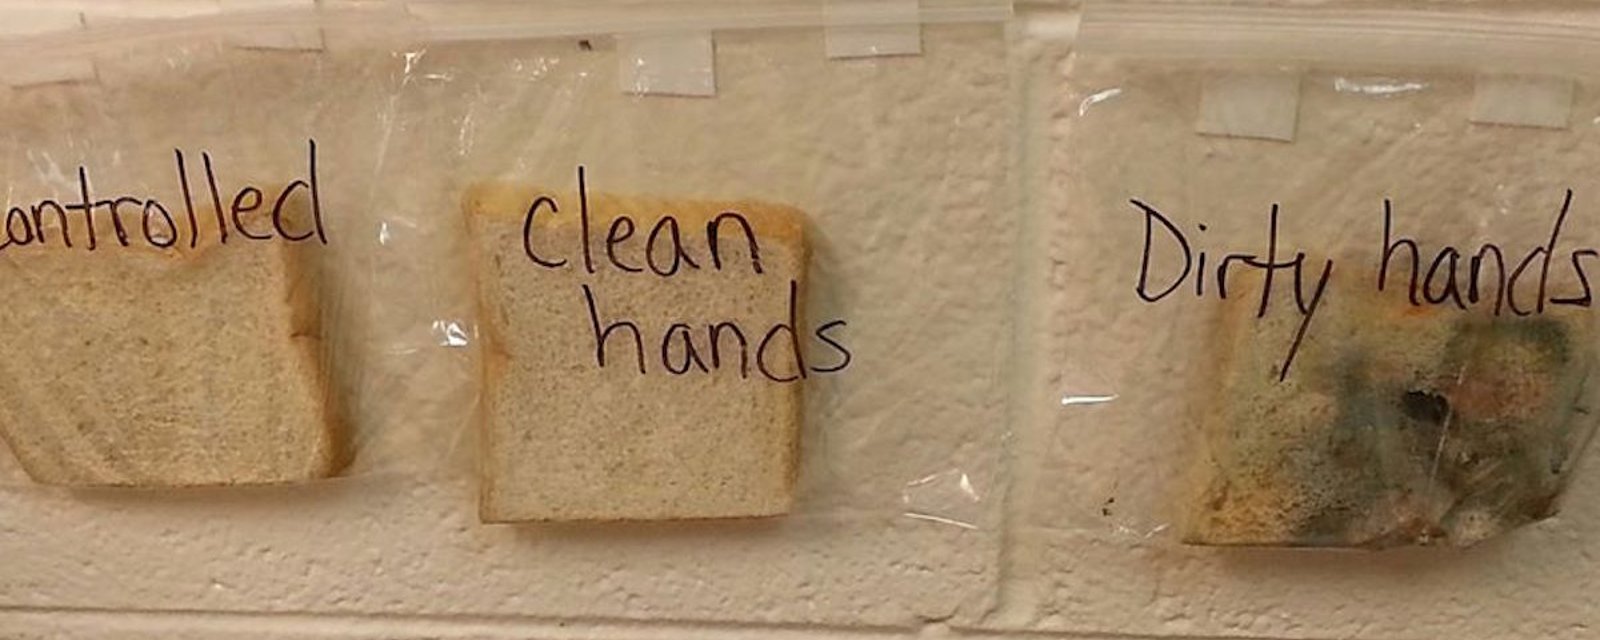 Avec 3 tranches de pain, une enseignante donne une leçon à ses élèves, qui ne l'oublieront jamais...